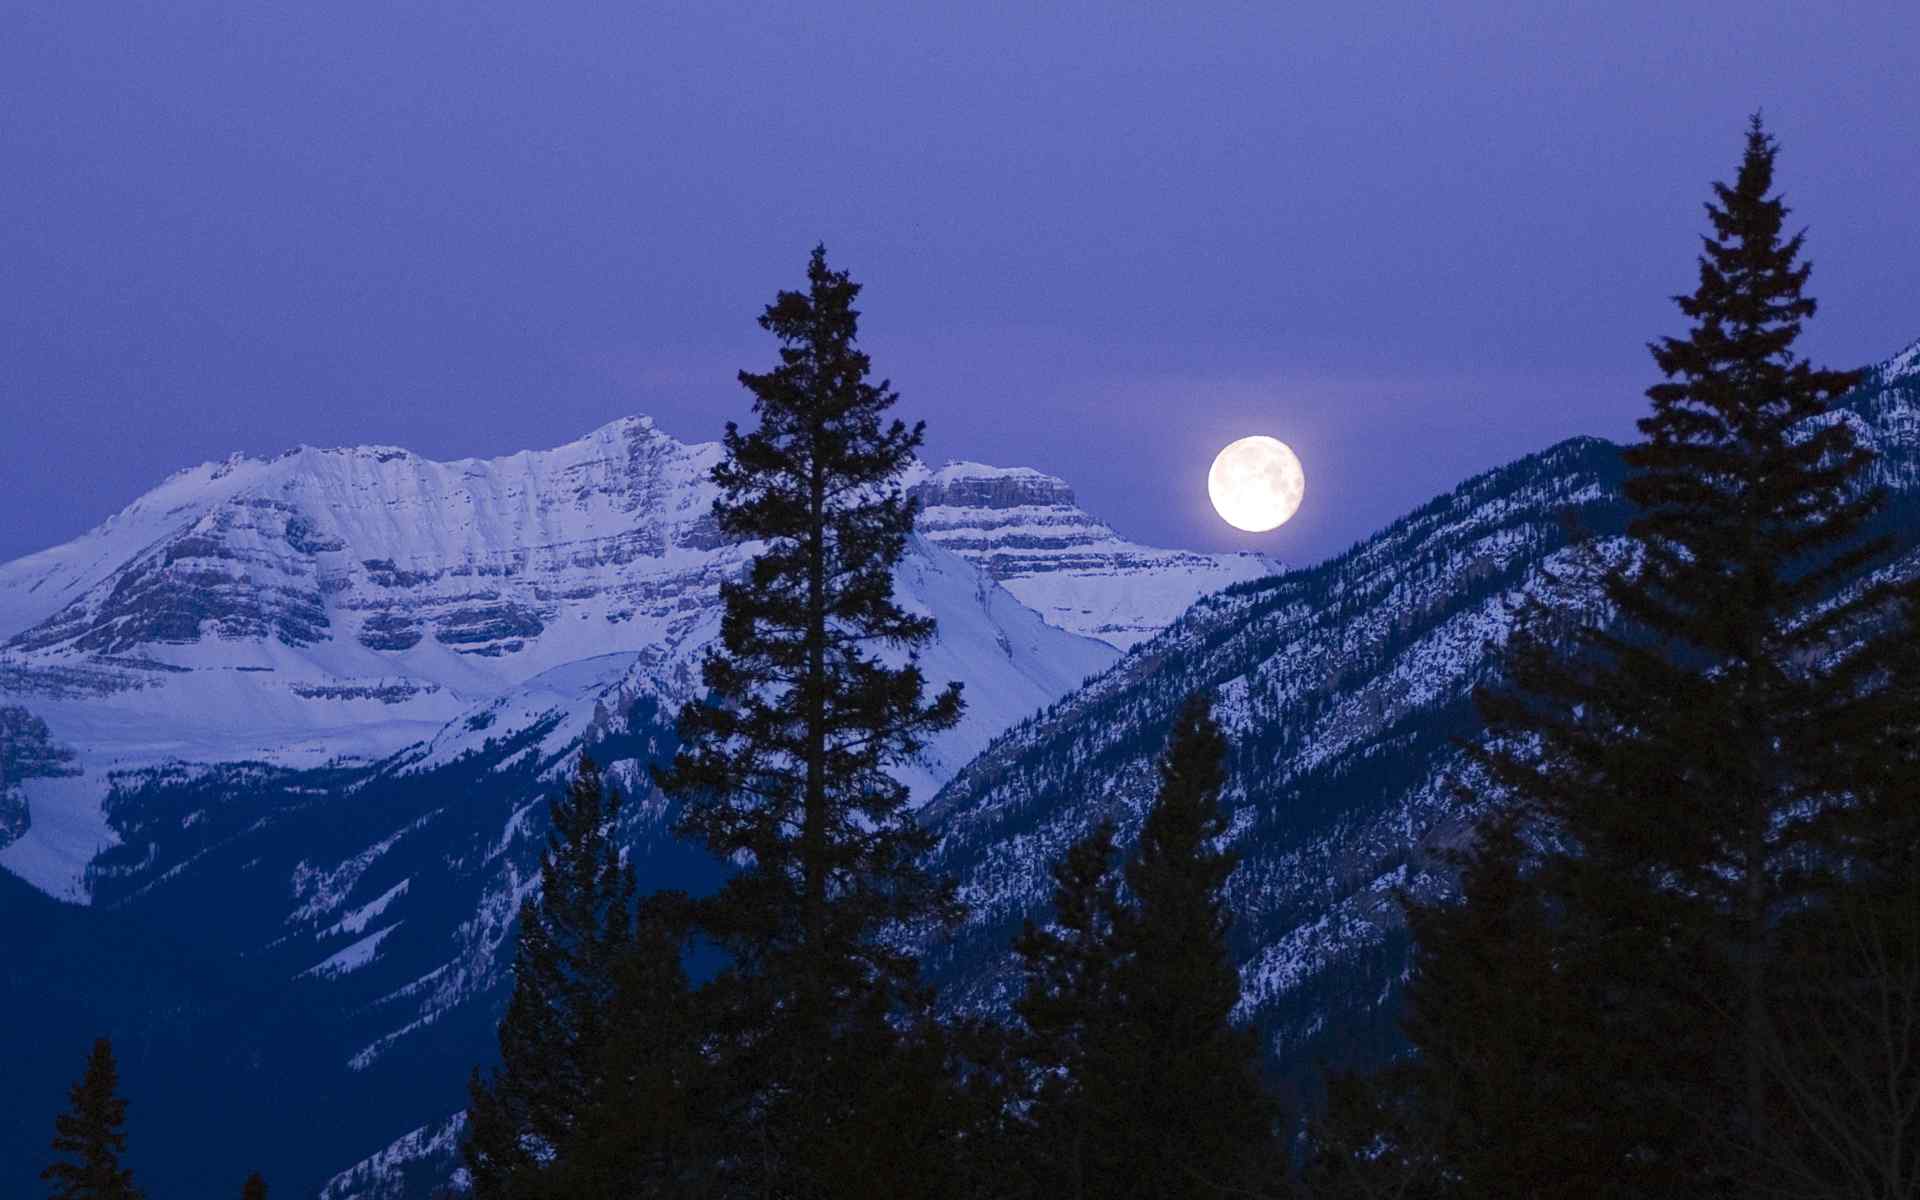 雪山上明亮的月光图片桌面壁纸